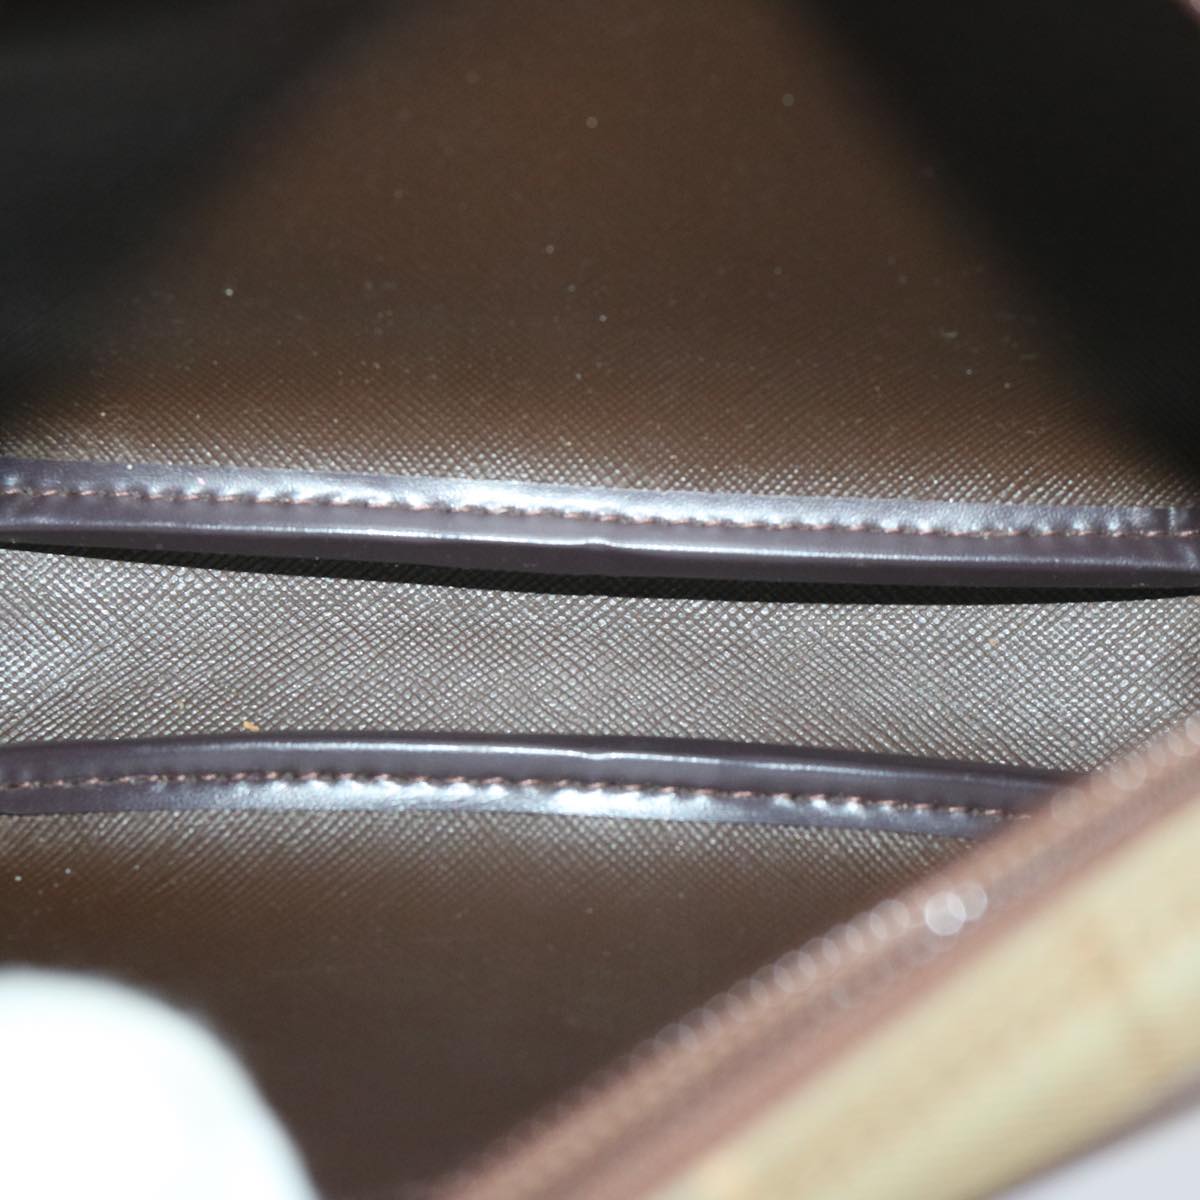 Burberrys Nova Check Shoulder Bag Canvas Beige Auth ac2837